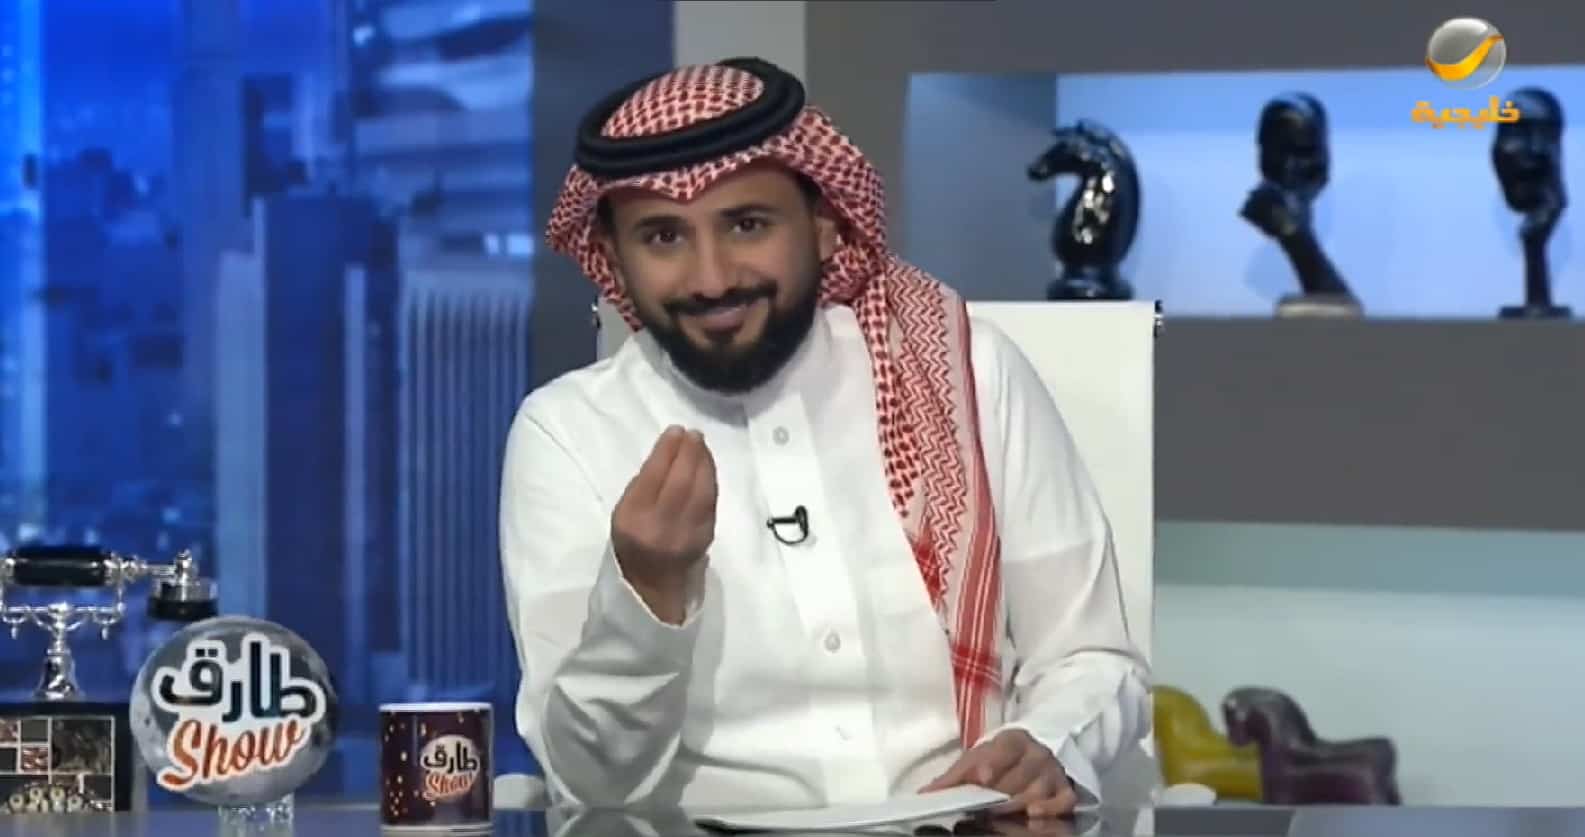 الفنان خالد العجيرب لـ"طارق شو": الكل يتمنى العمل مع هيئة الترفيه